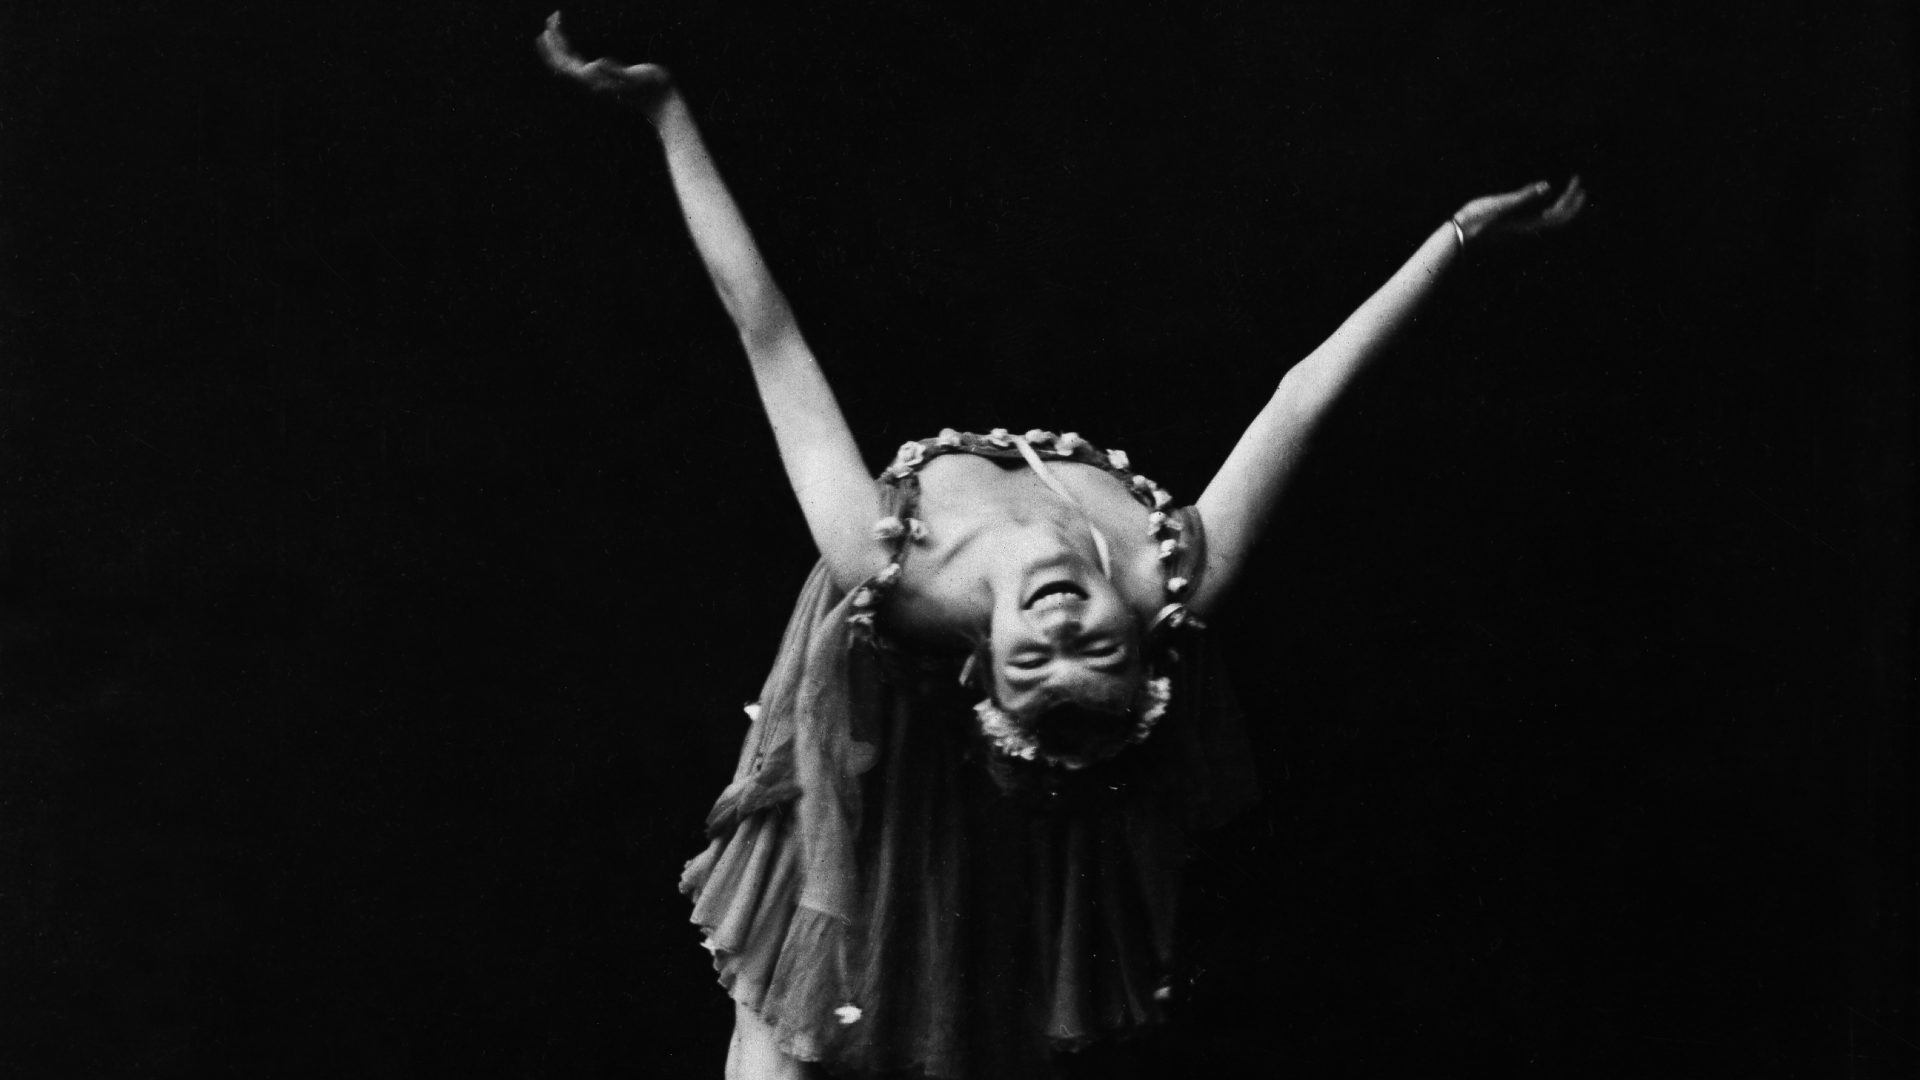 Dancer Anita Berber. Photo: ullstein bild/ ullstein bild via Getty
Images